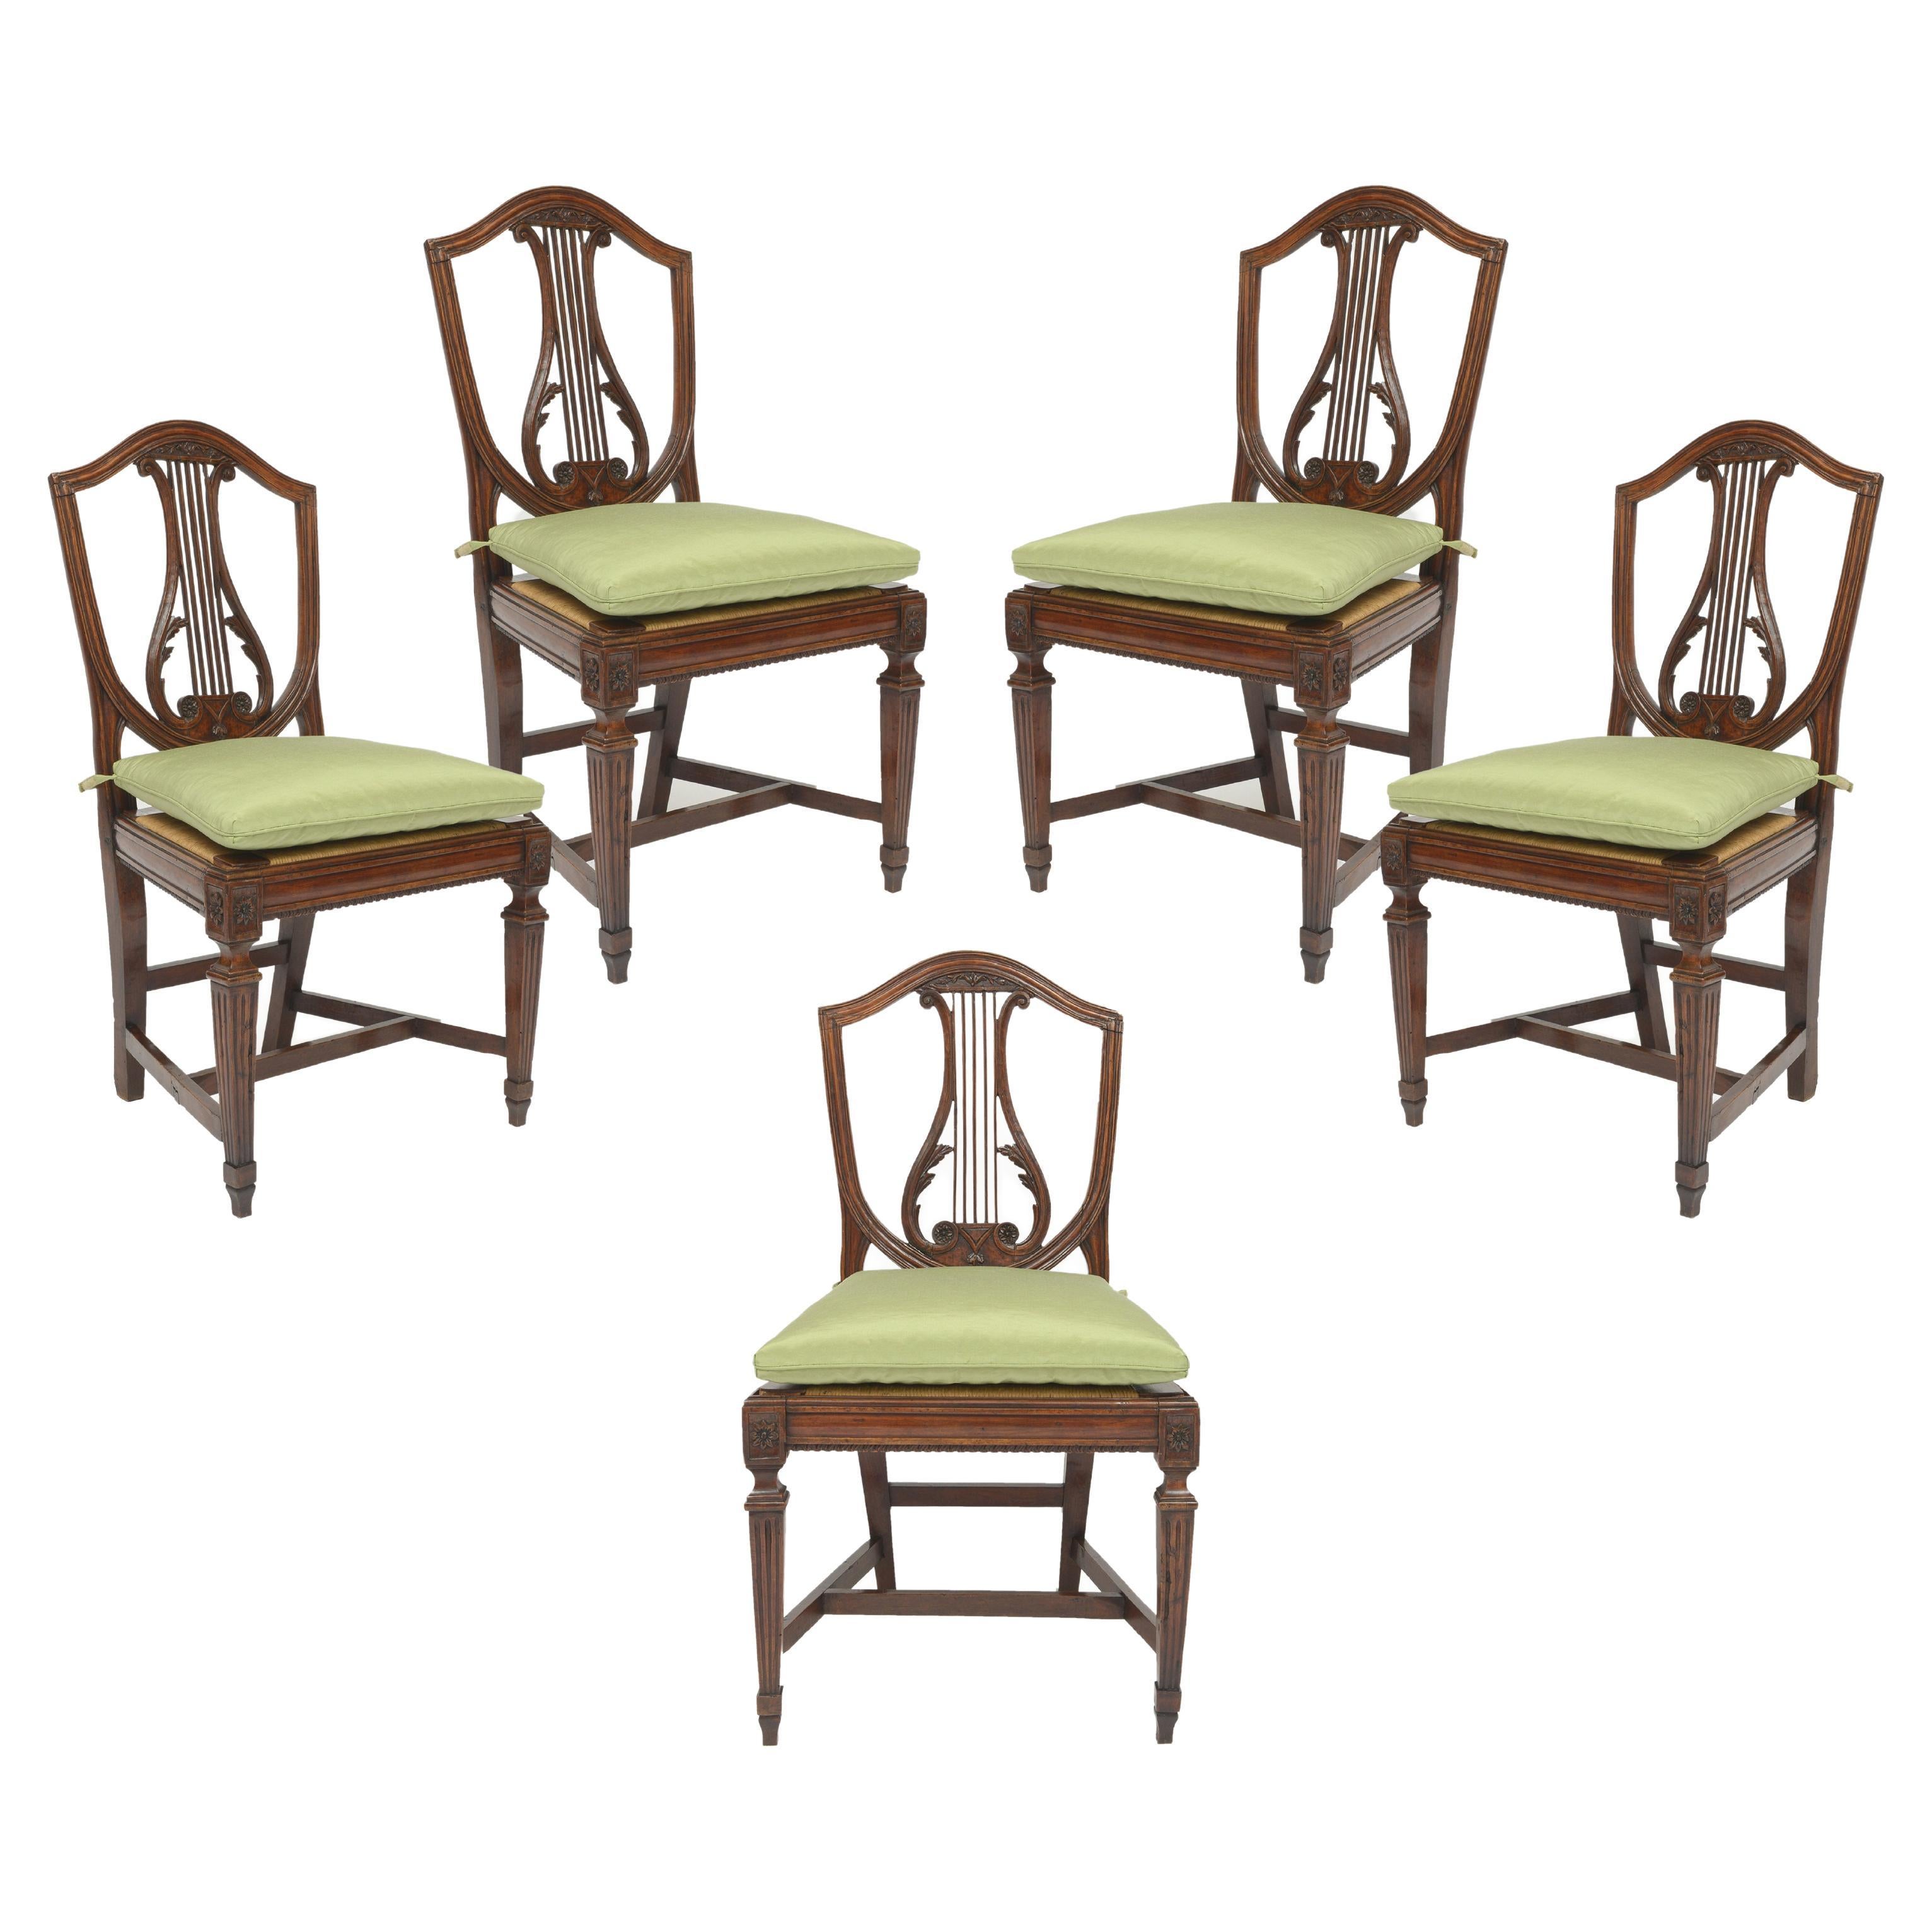 Début du 19e siècle - Ensemble de 5 chaises italiennes à dossier en forme de lyre en noyer